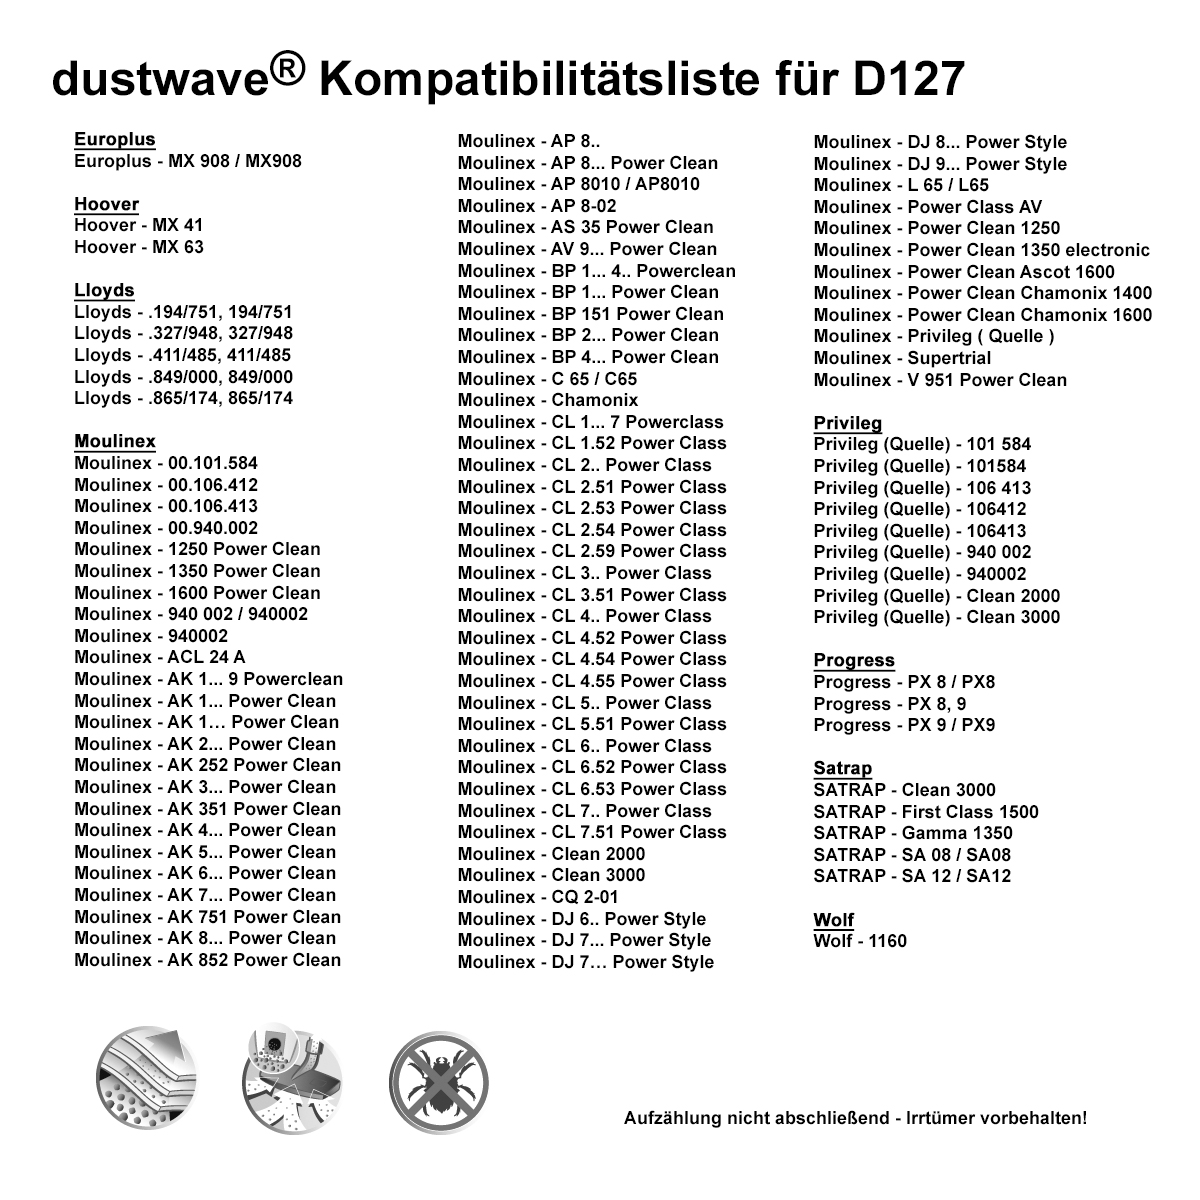 Dustwave® 1 Staubsaugerbeutel für Hoover MX 41 - hocheffizient, mehrlagiges Mikrovlies mit Hygieneverschluss - Made in Germany